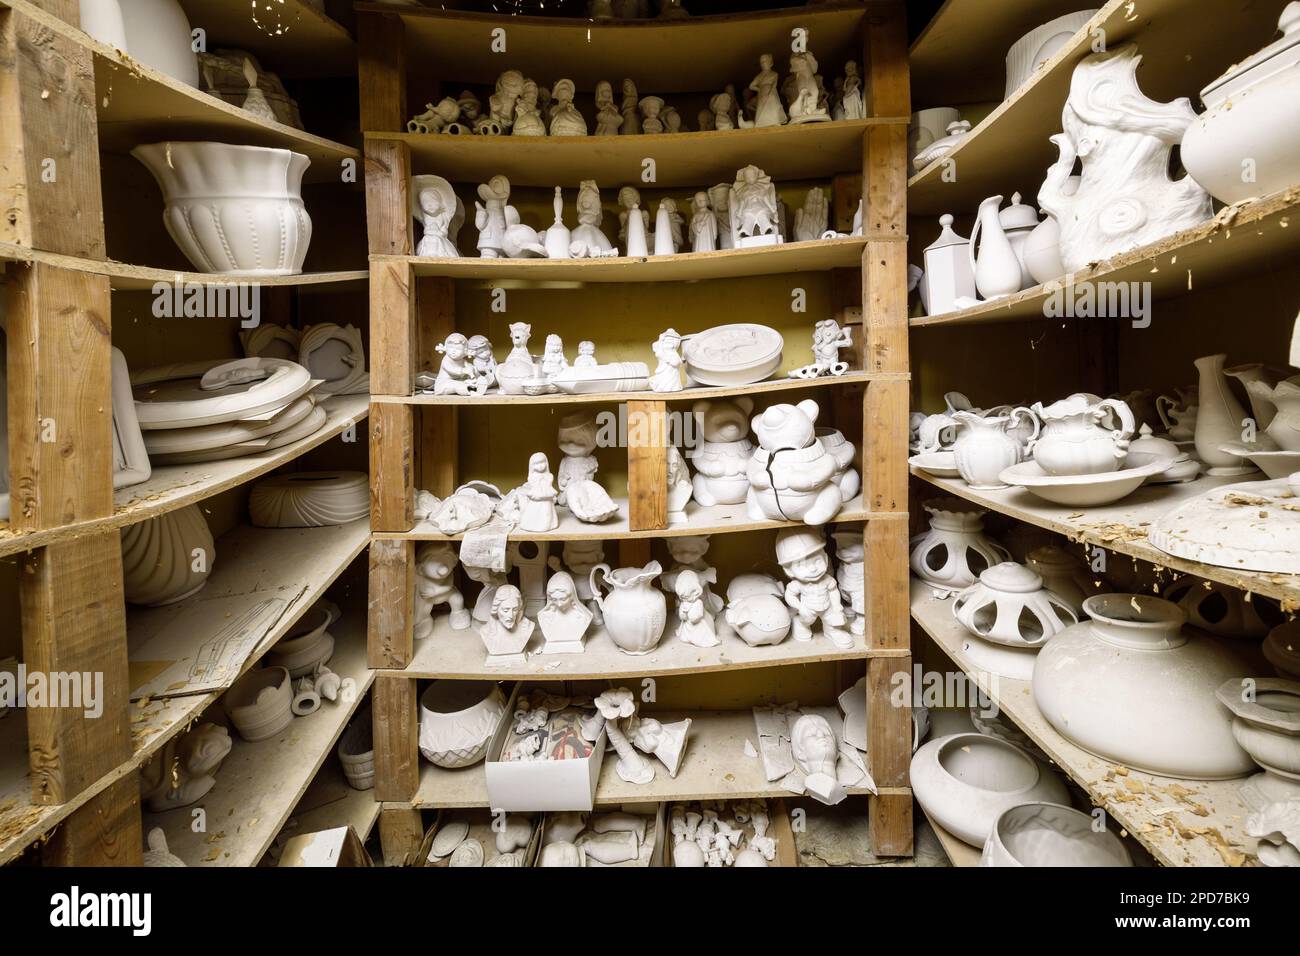 Docenas de figuras de cerámica sin pintar en los estantes. Foto de stock